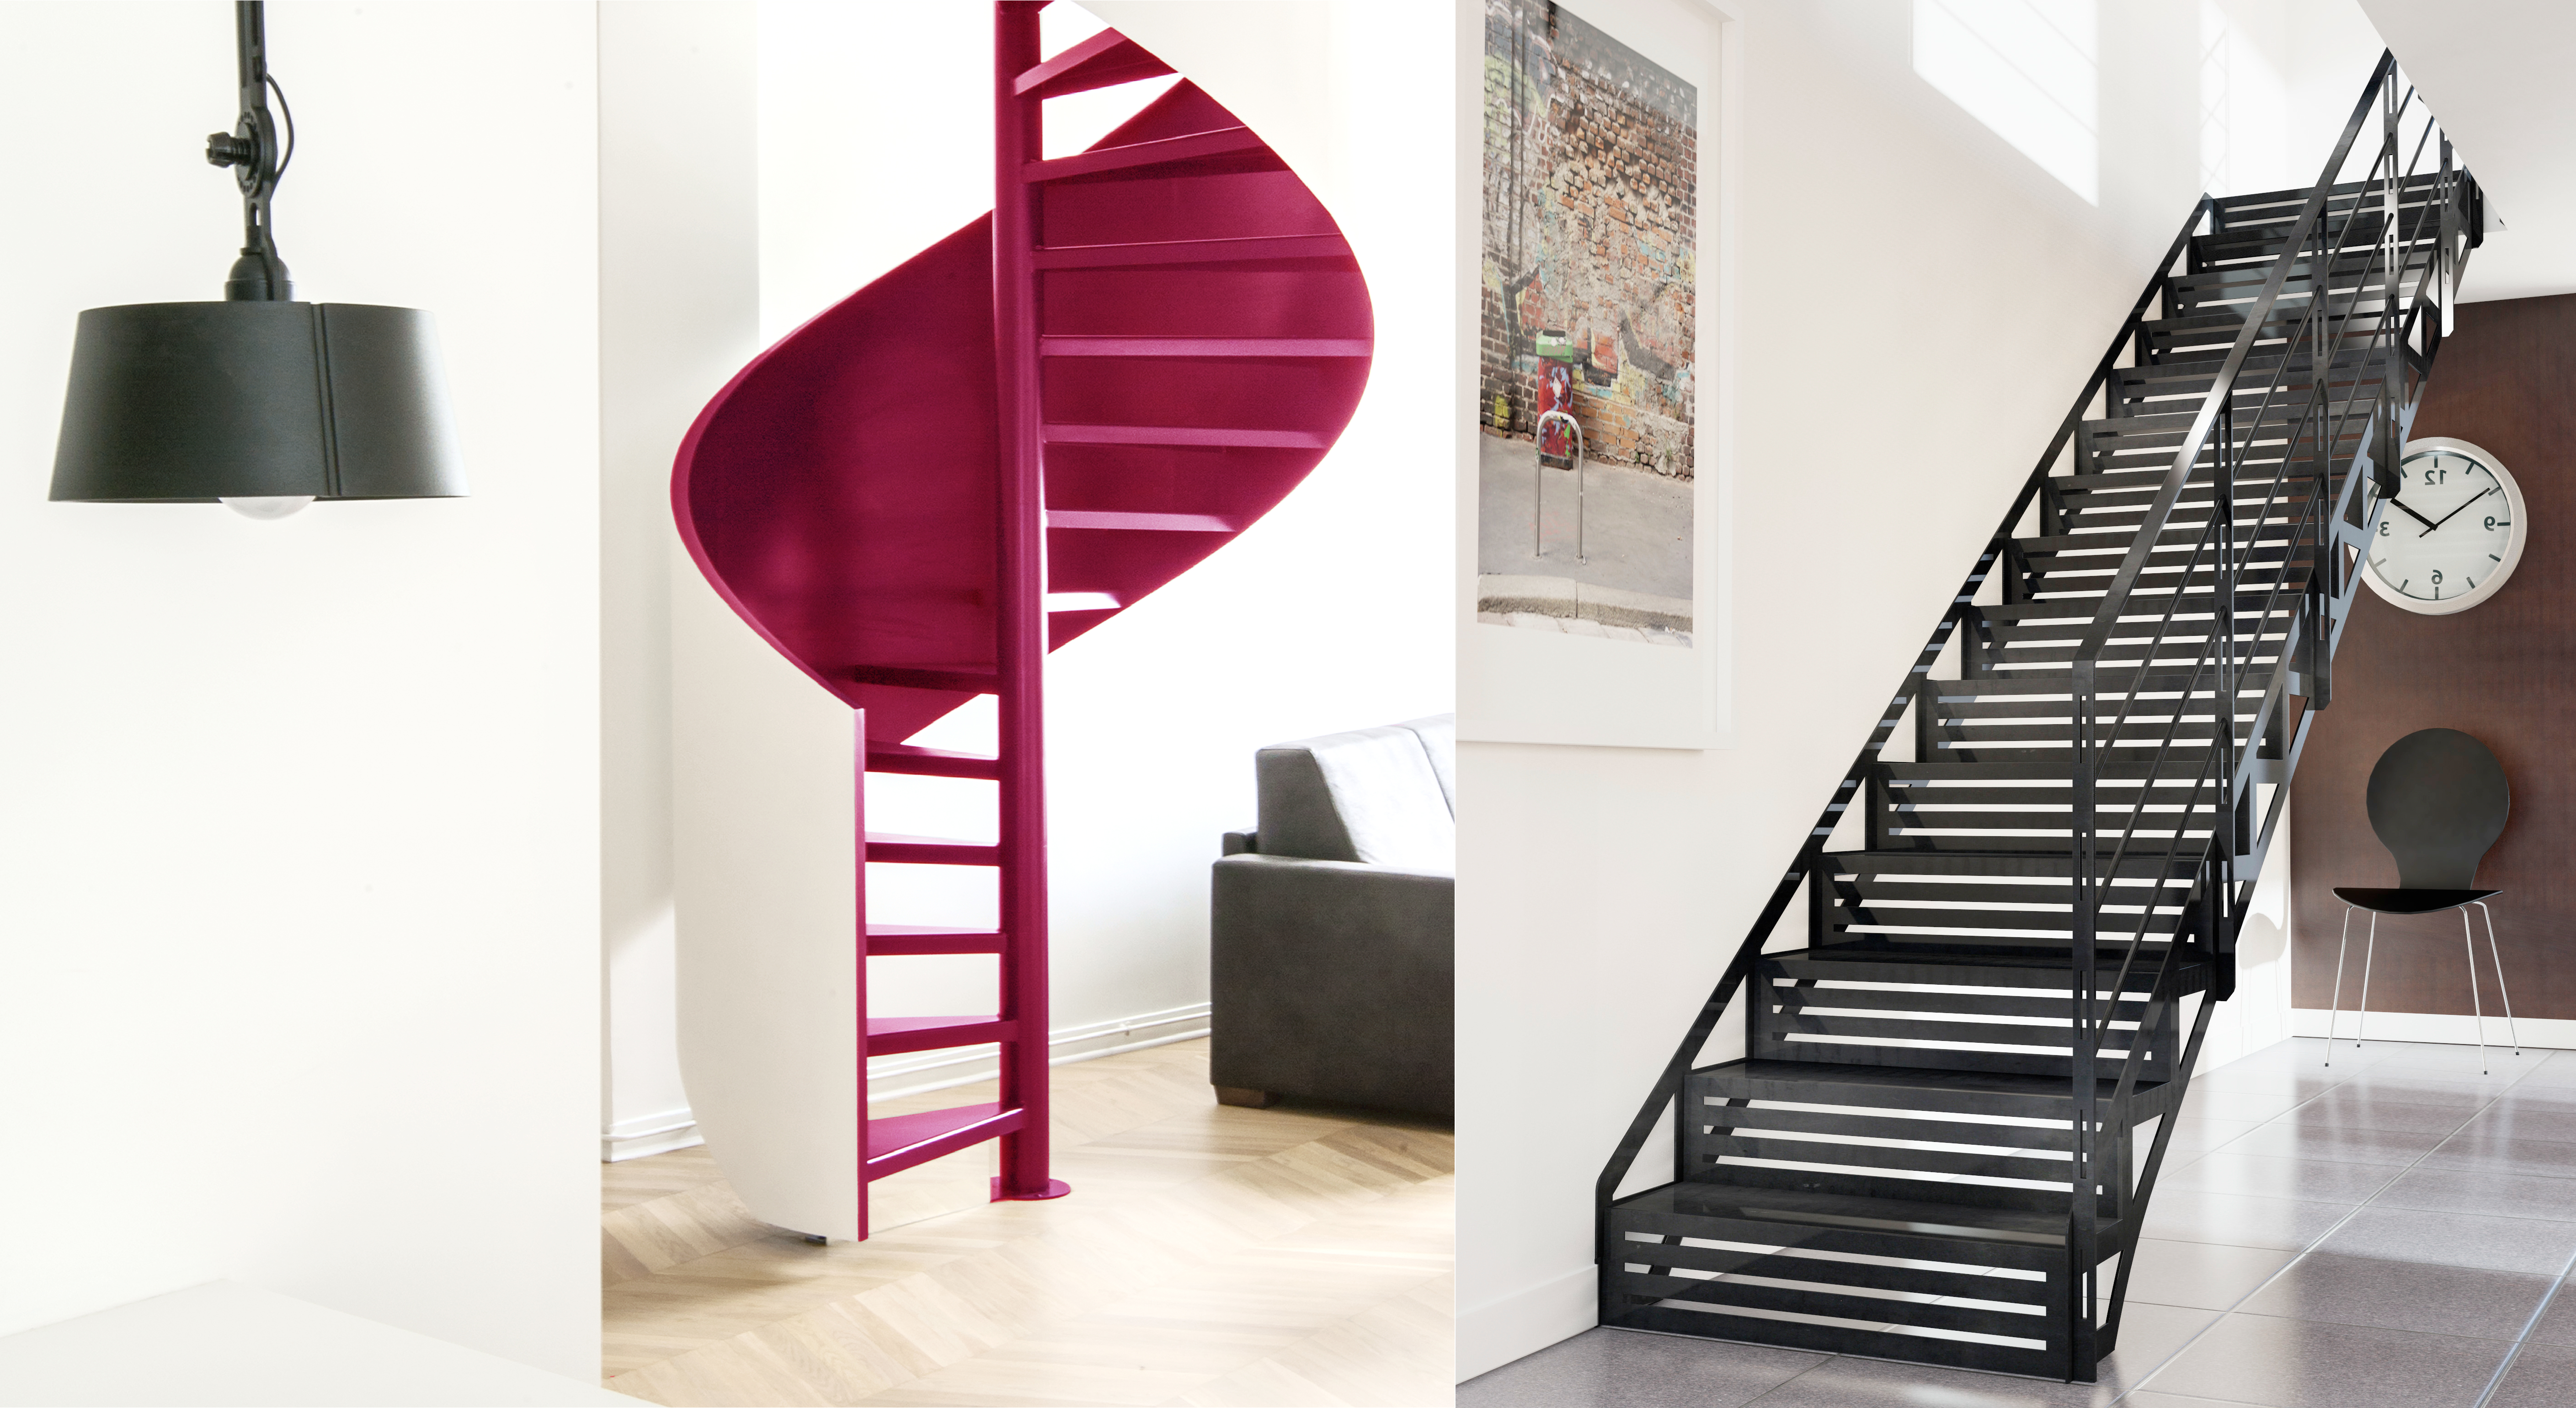 Escaliers Décors®, membre de la French Fab. C'est la garantie que votre escalier soit 100% made in France.